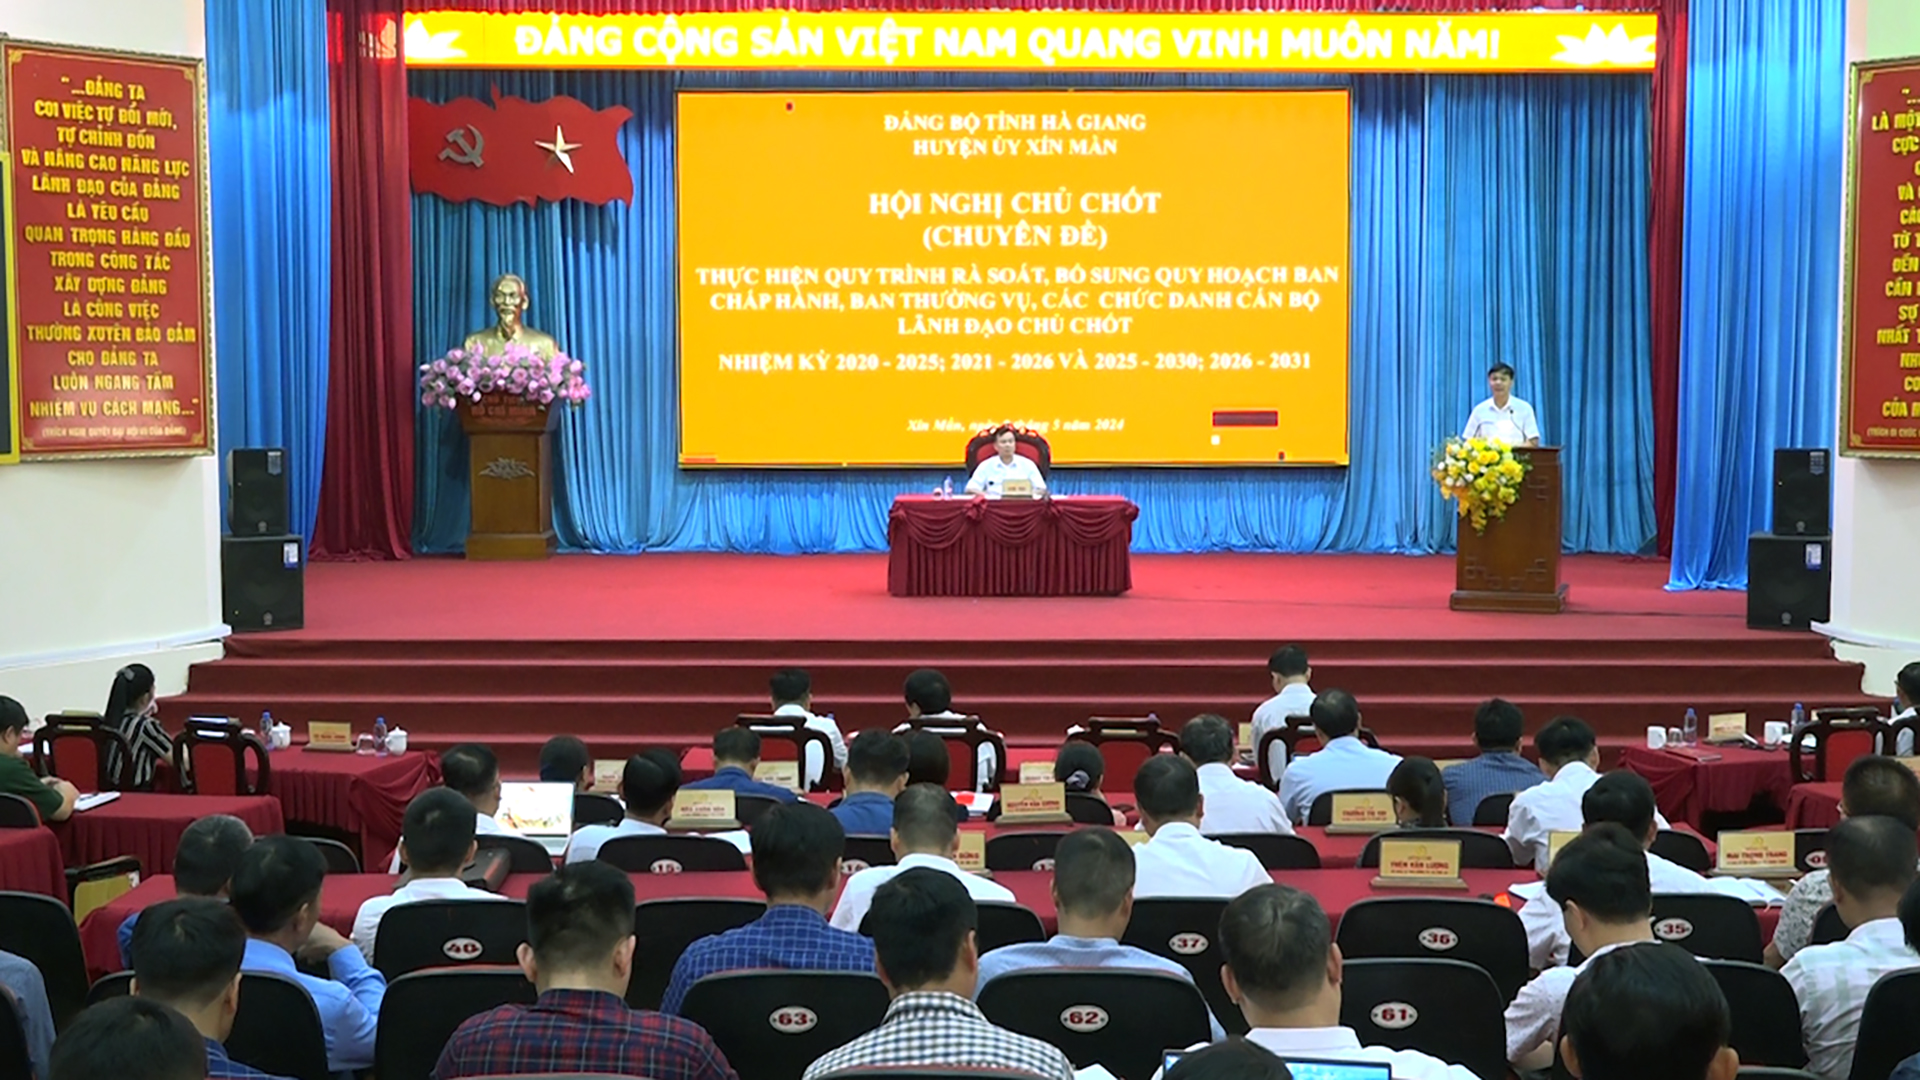 Hội nghị Ban Chấp hành Đảng bộ huyện Xín Mần lần thứ 25 khóa XVIII (Chuyên đề)